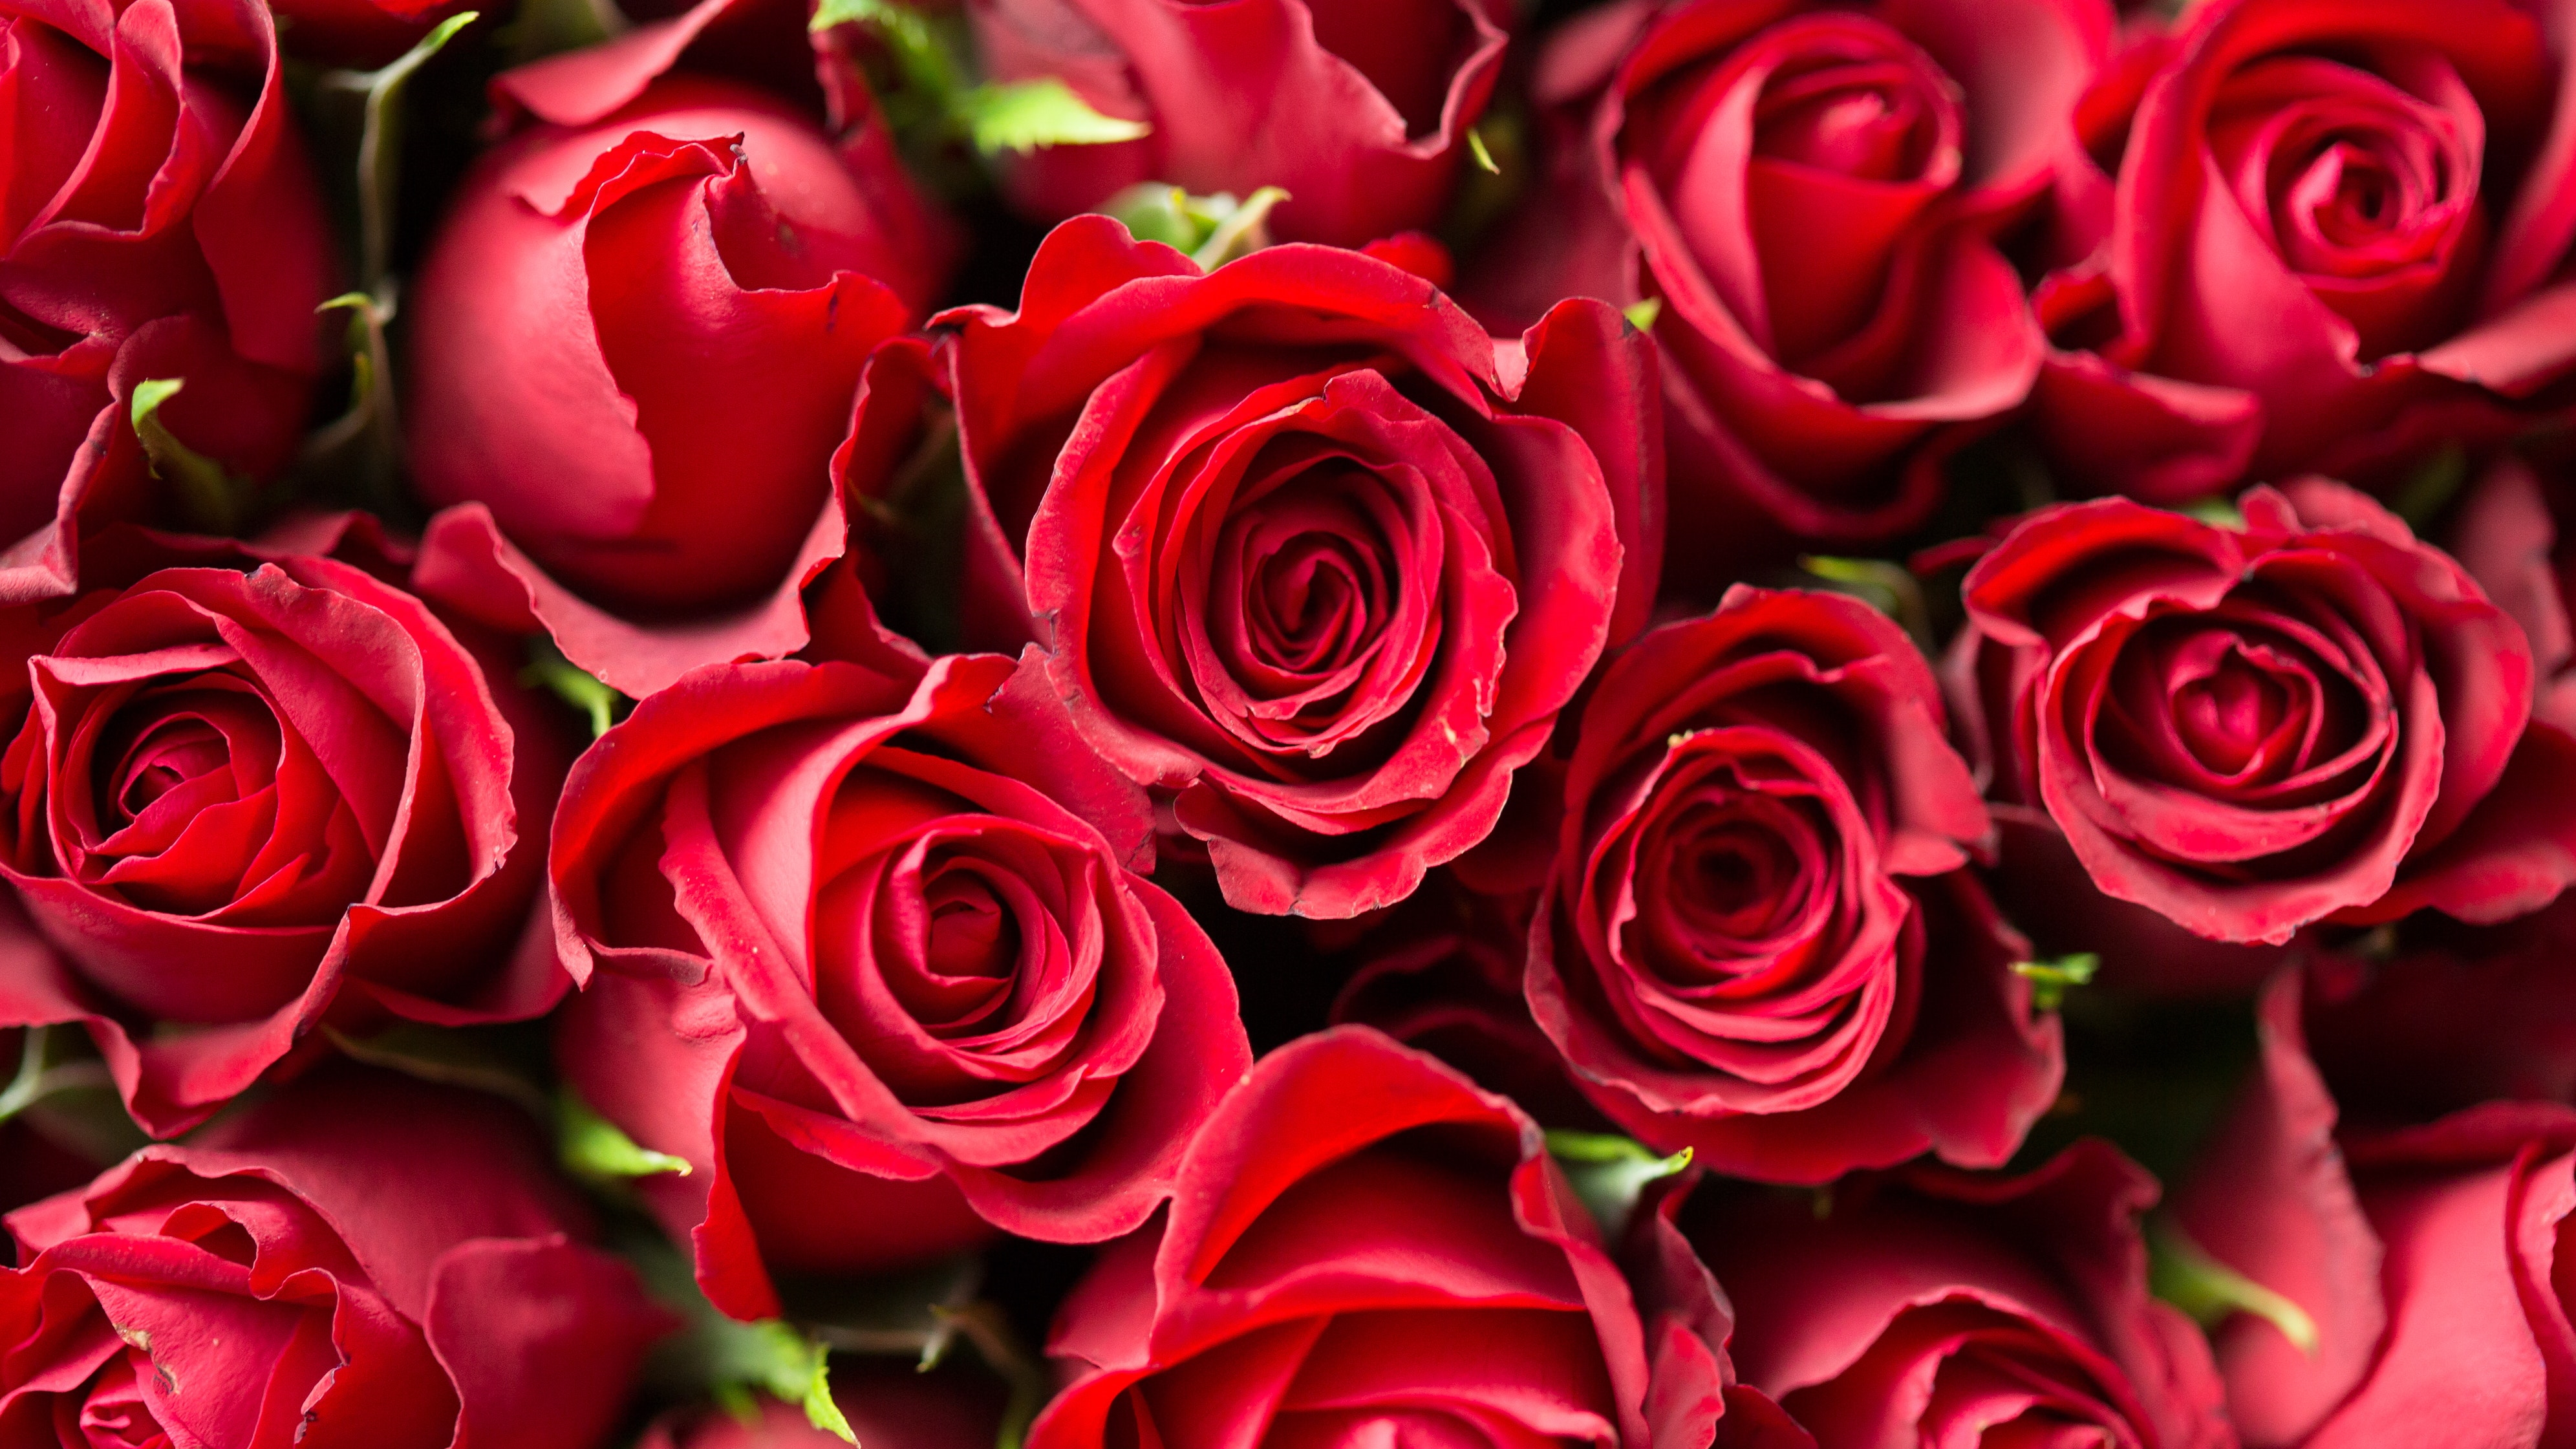 Valentines day: Røde roser er en klassiker å gi, men kan visne.